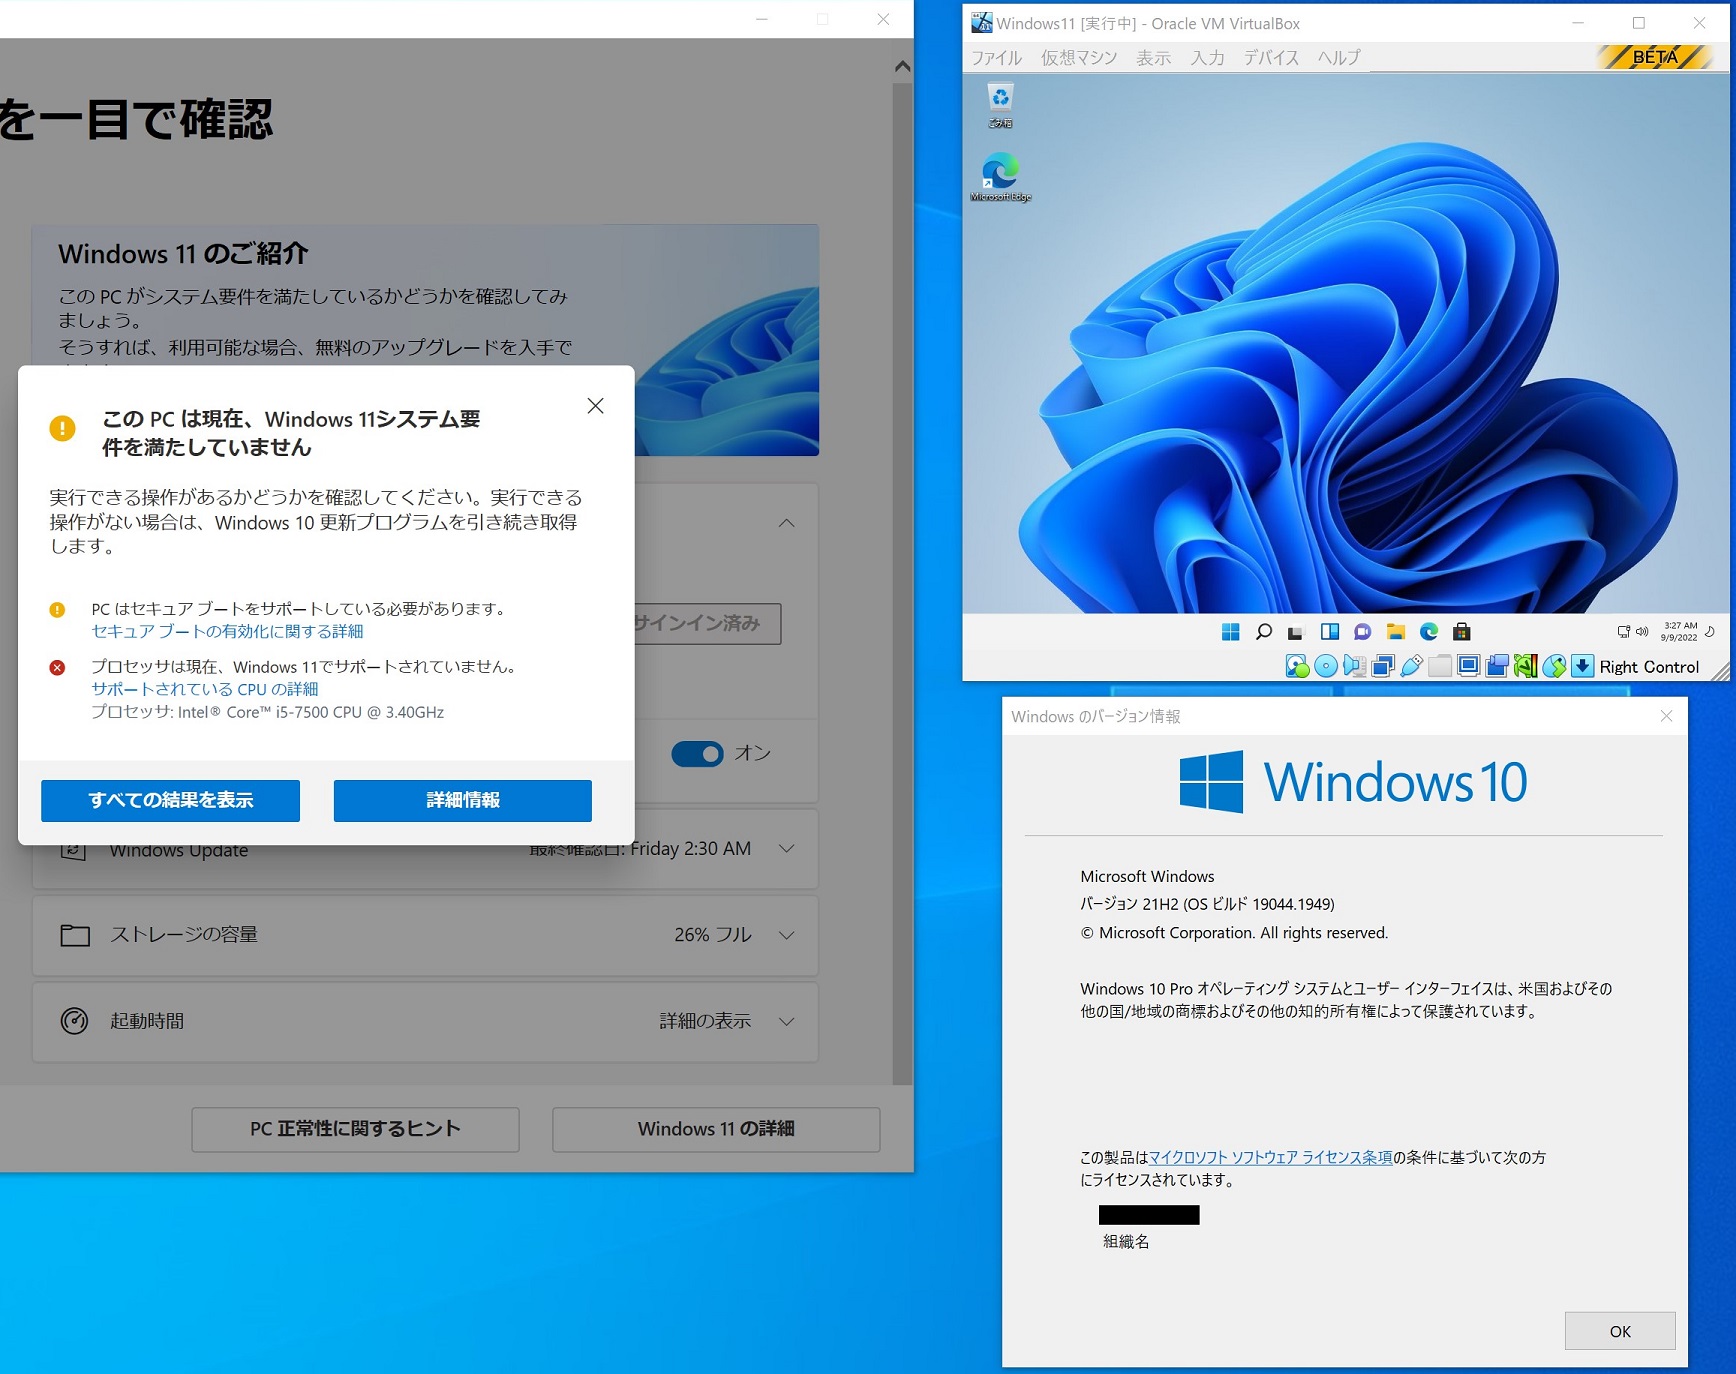 Windows11がインストール出来るVirtualBox 7.0 betaが公開されたので 